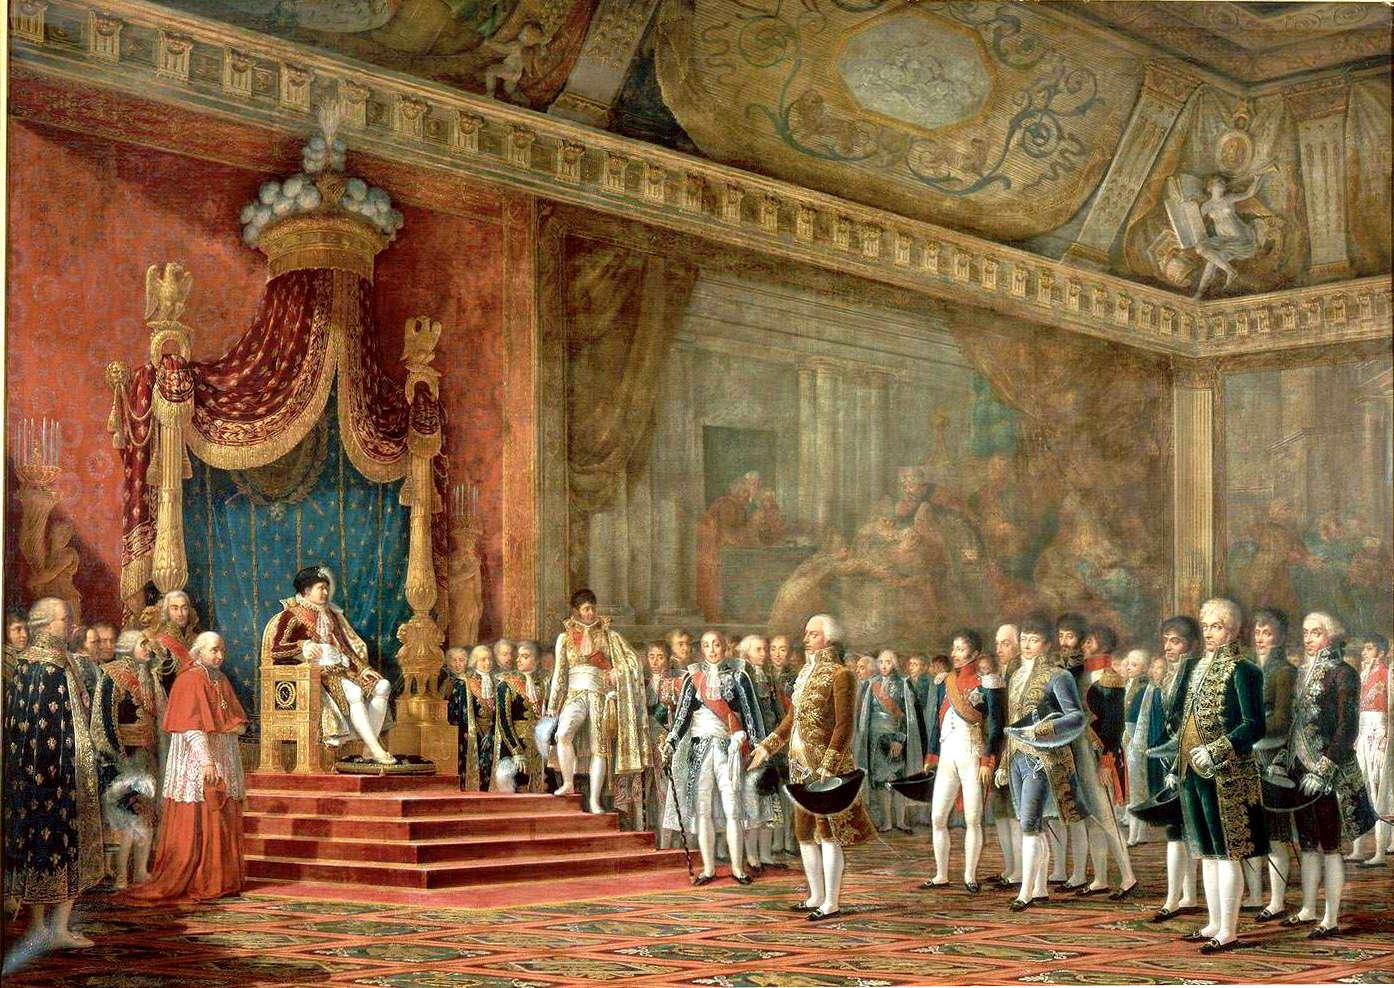 La Députation du Sénat romain offrant ses hommages à Napoléon.16 novembre 1809